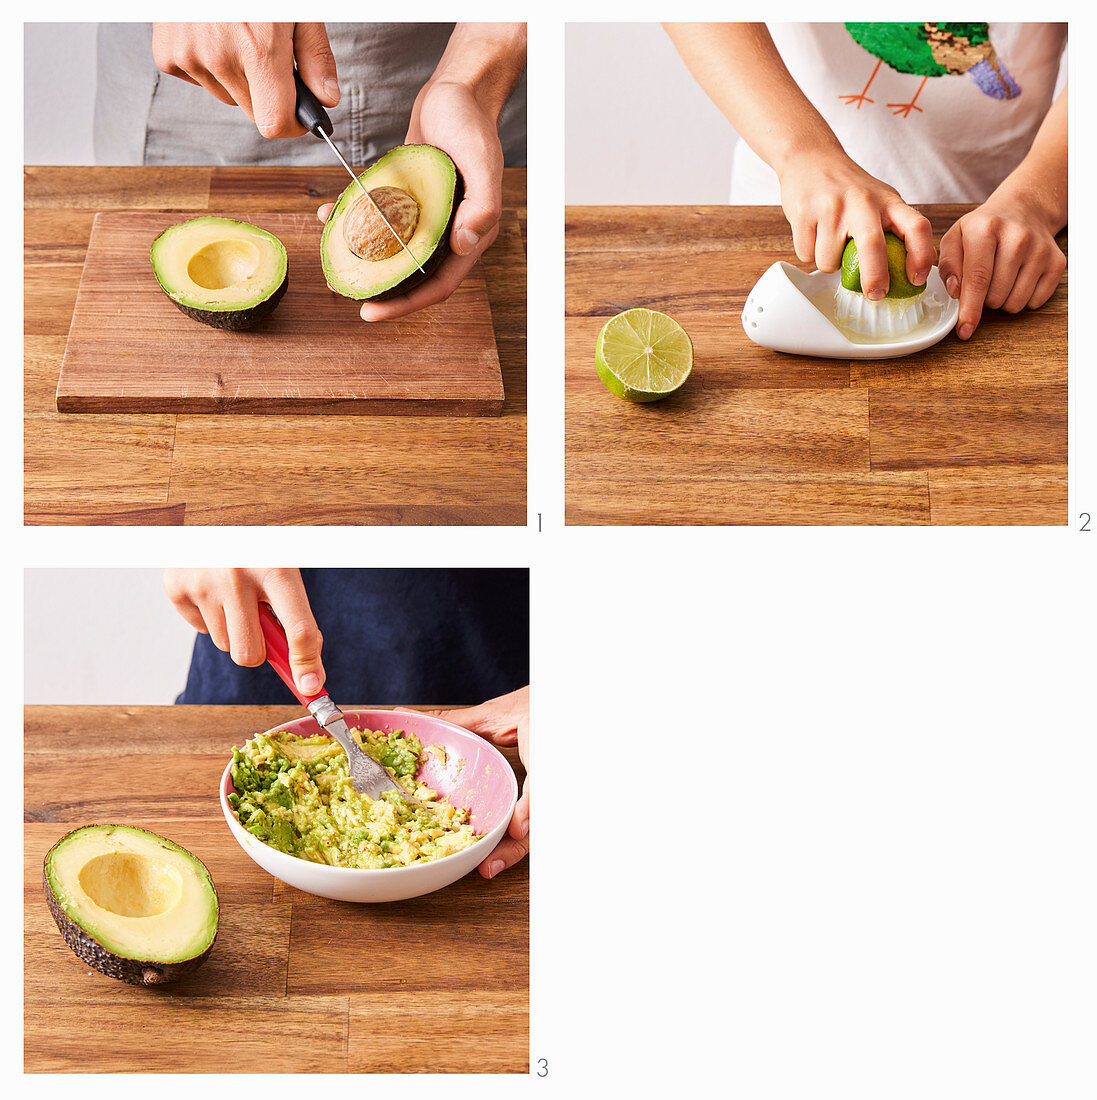 How to prepare avocado dip